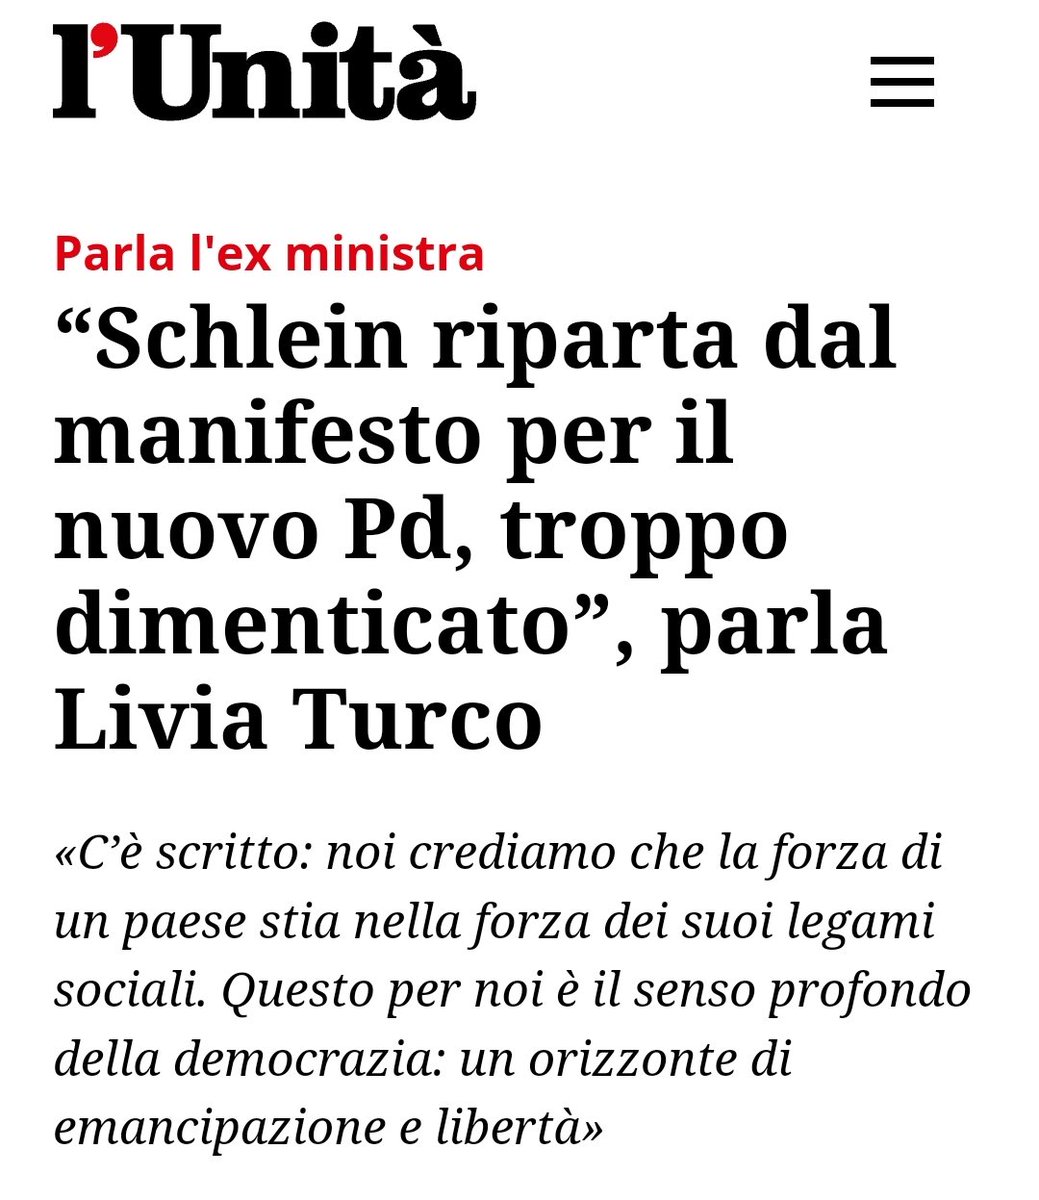 E perché quando l'ha fatto @matteorenzi non andava bene? 

No, giusto per capire, perché - per come la vedo io - #Renzi è stato, dopo #Veltroni, l'unico che ha seguito quel manifesto fondativo del @pdnetwork .

Ah... Certo... Non piaceva alla #Ditta!